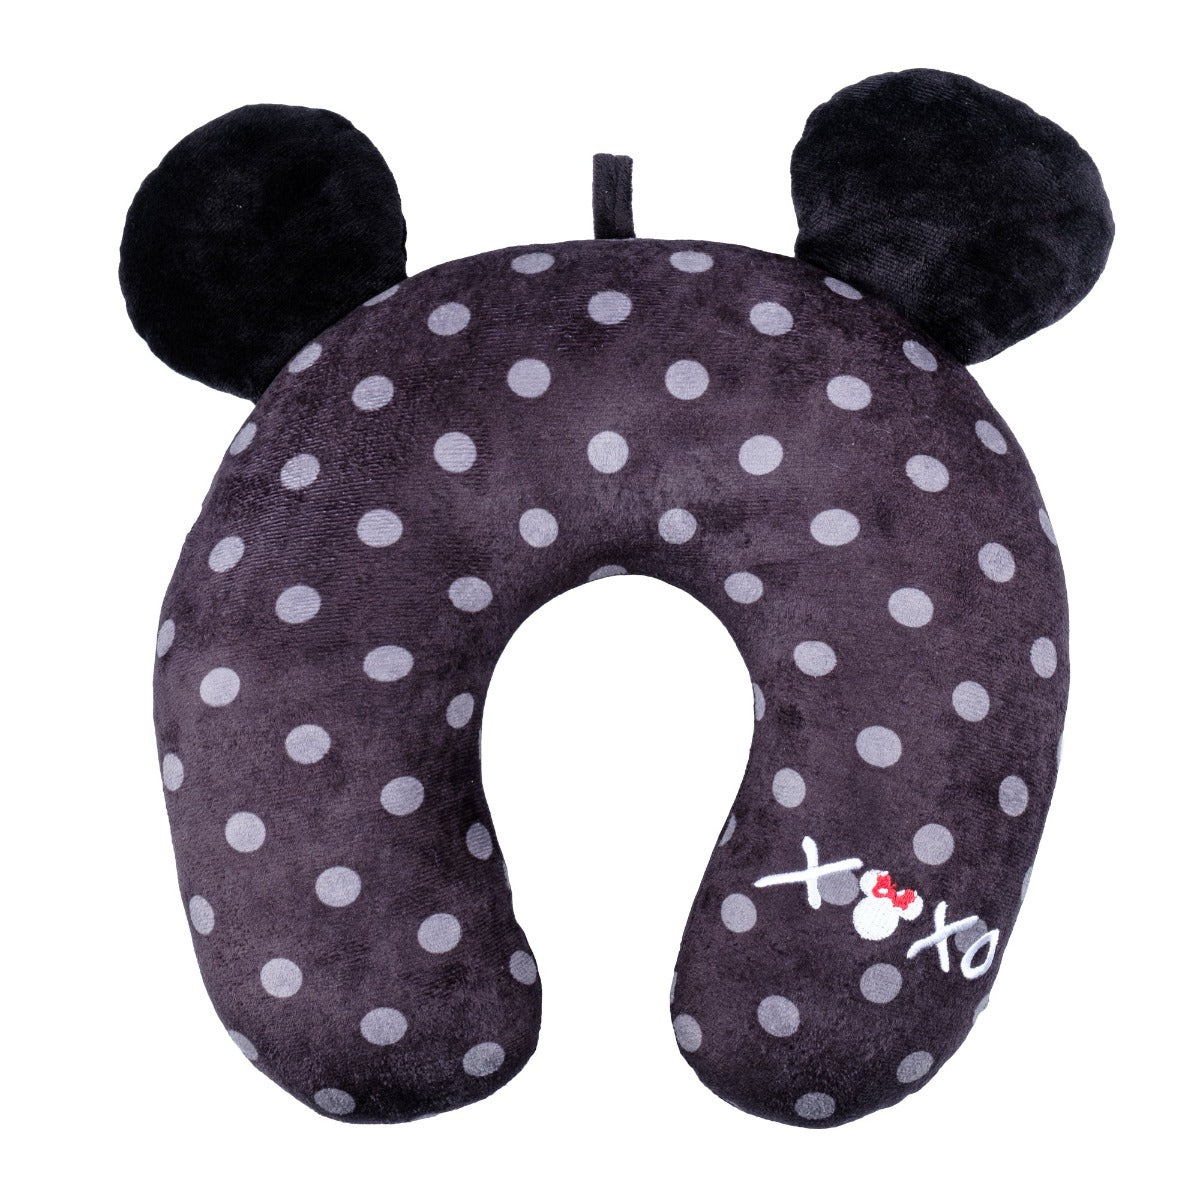 Disney Minnie Mouse Fūl XOXO travel neck pillow black white polka dot